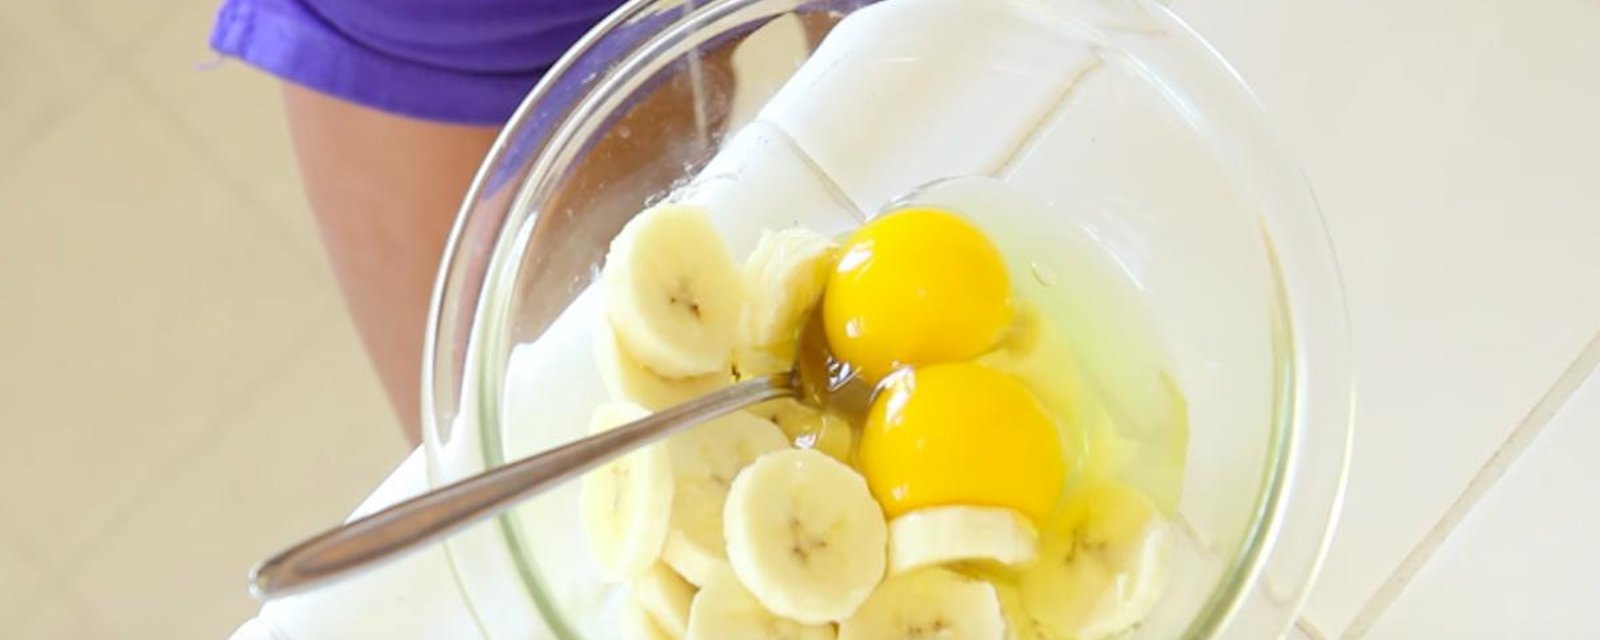 Dans un bol, elle mélange des oeufs et des morceaux de bananes. Elle obtient un déjeuner nutritif à souhait!